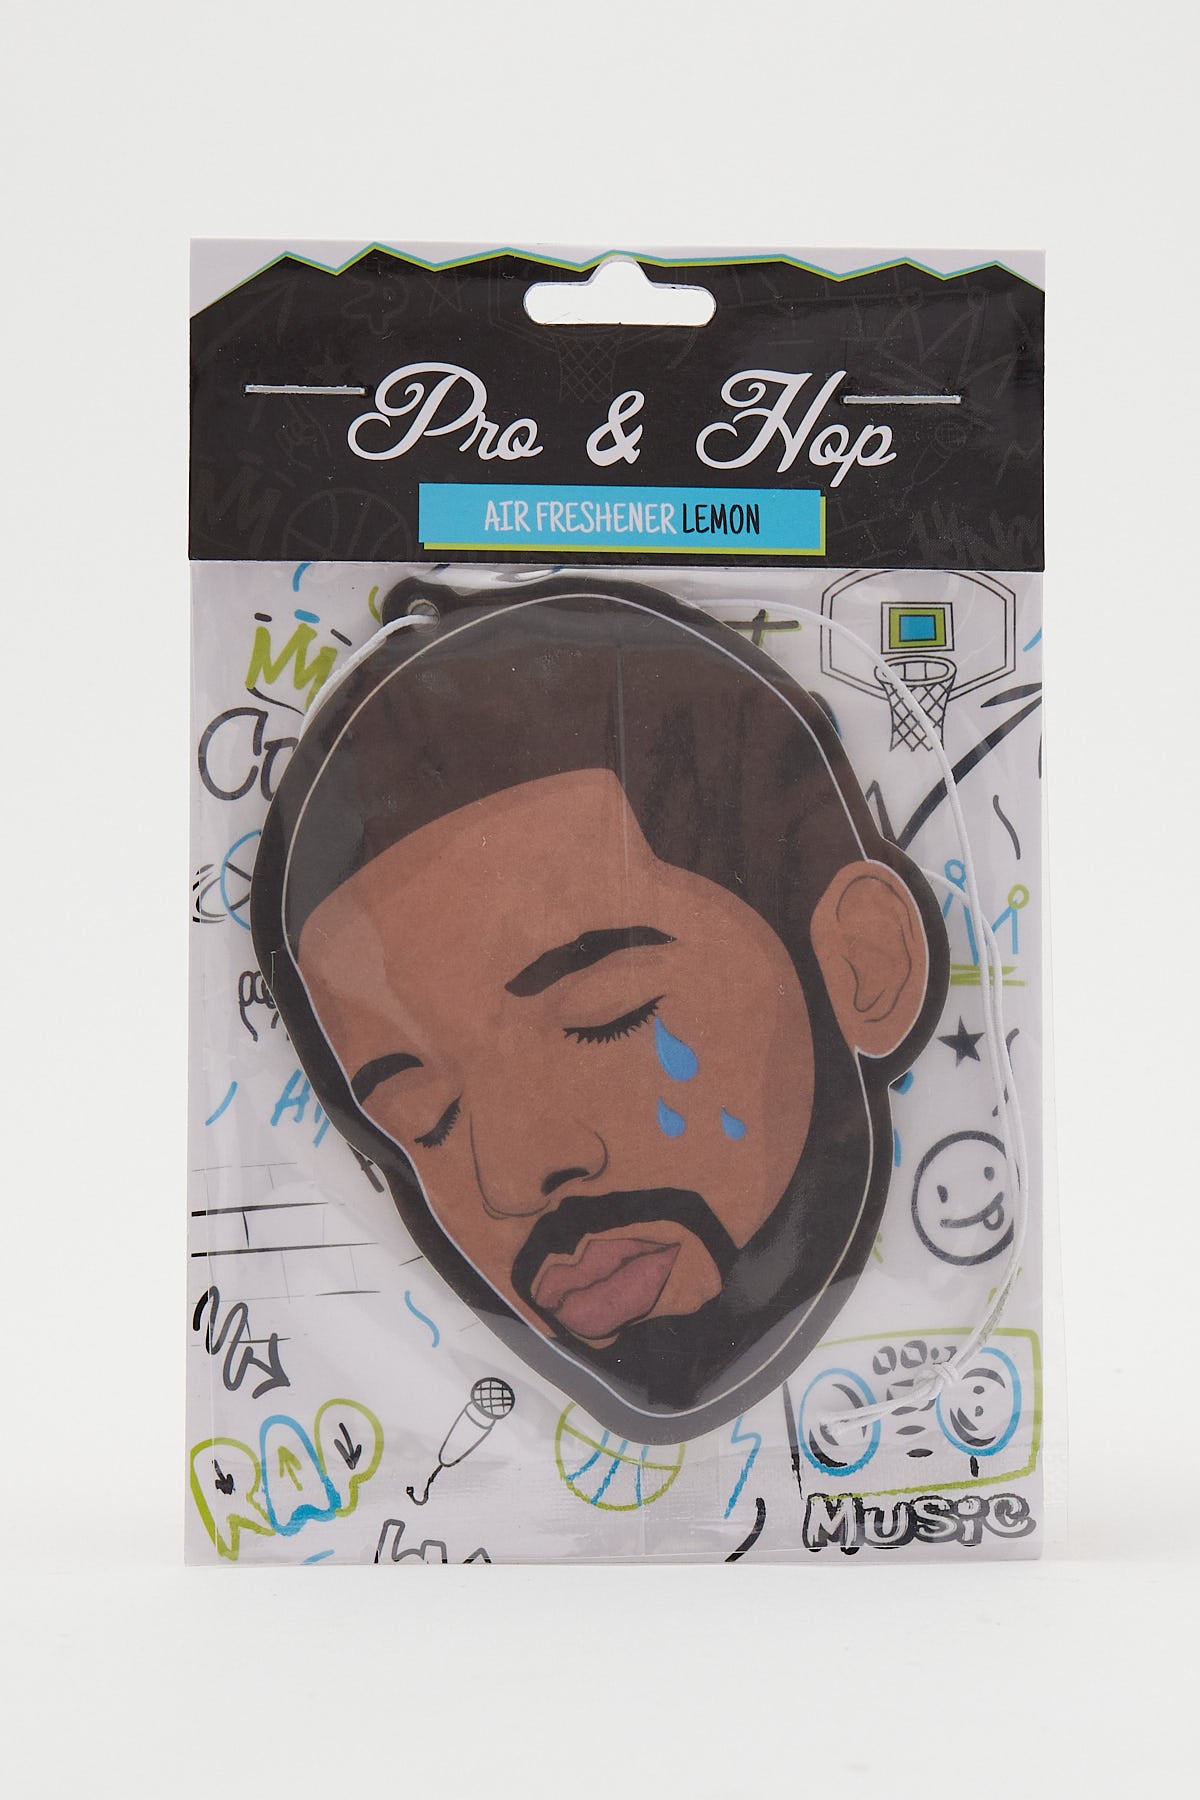 Pro & Hop Drake Crying Air Freshener